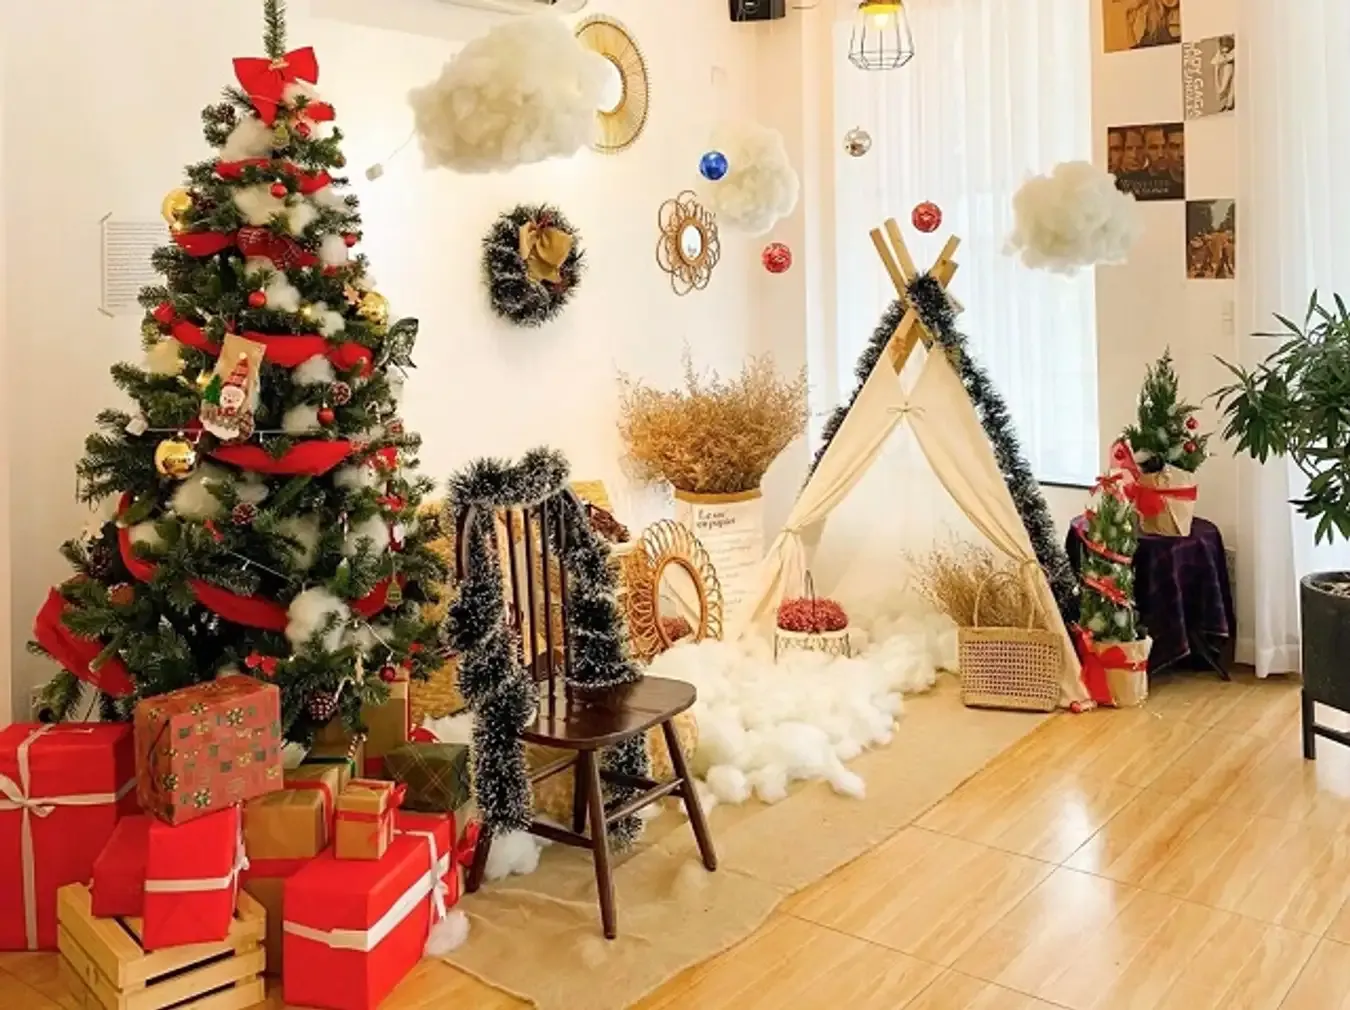 Góc chủ đề Giáng sinh vơi cây thông và những món quà